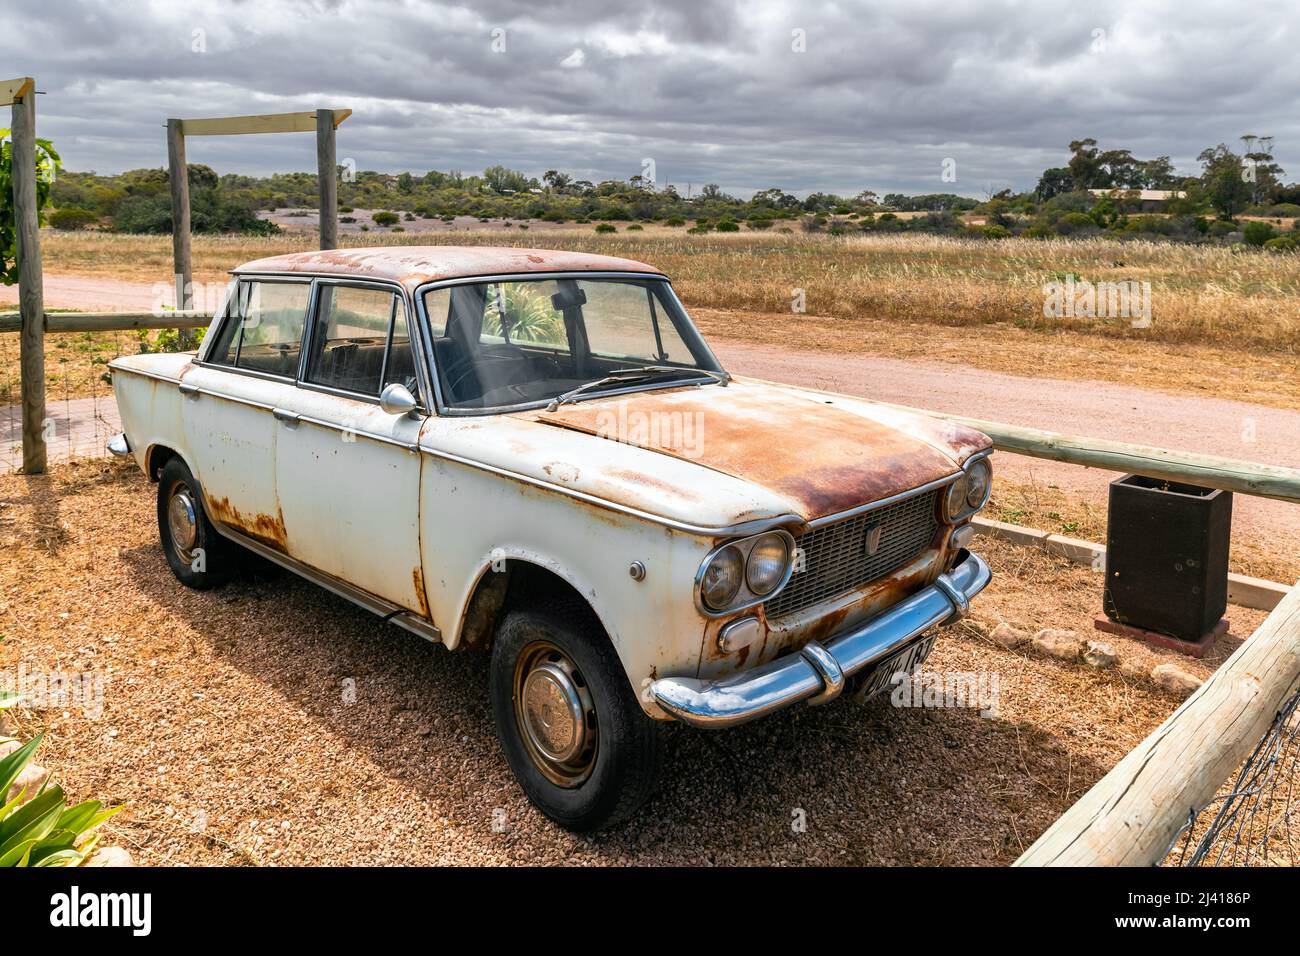 Moonta, South Australia - 27 ottobre 2019: Vecchia Fiat 1500 arrugginita parcheggiata vicino alla fattoria in Outback australiano in una giornata intensa Foto Stock